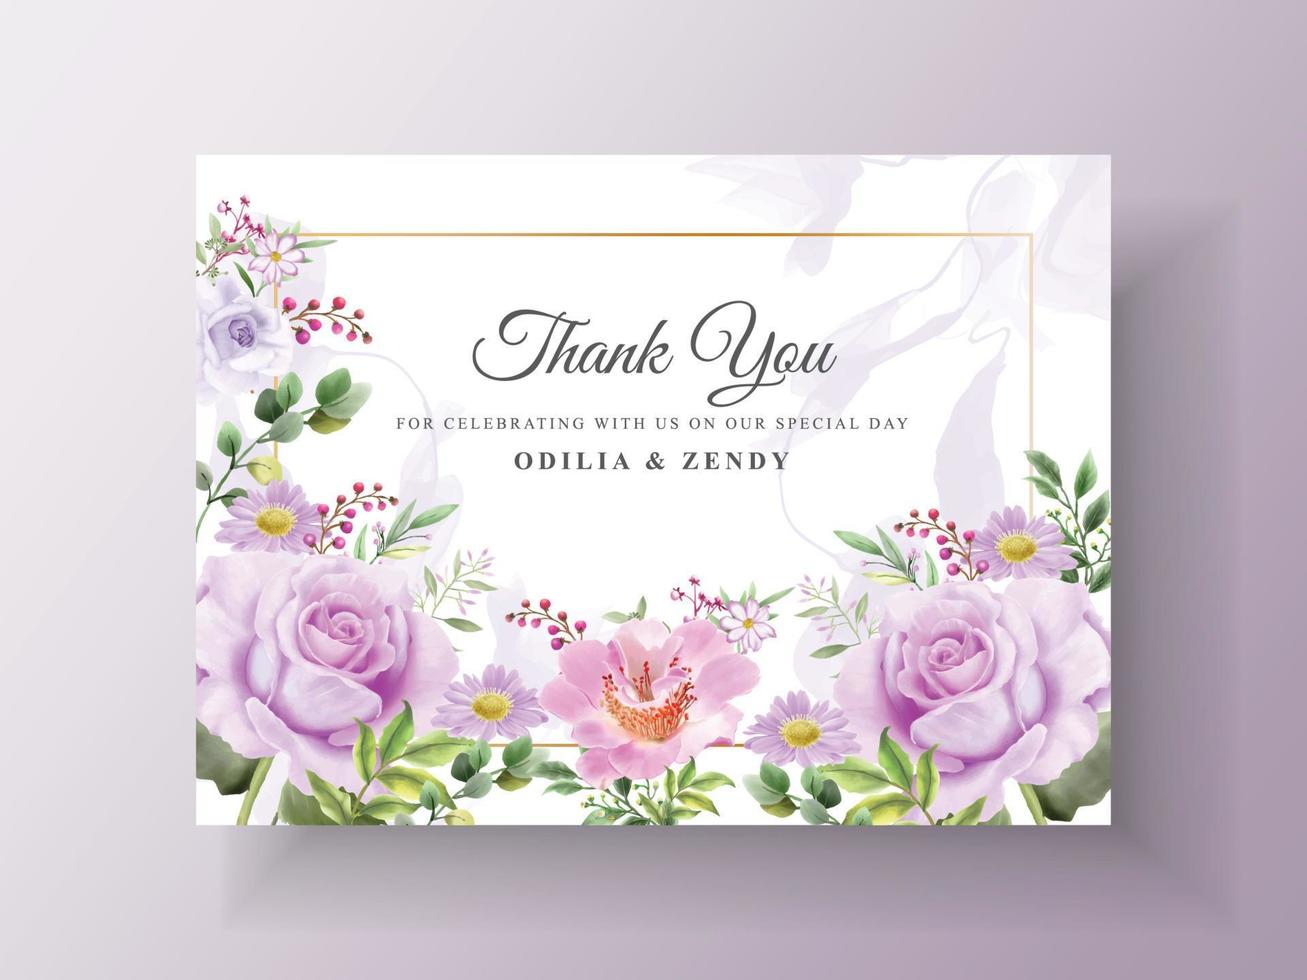 prachtige paarse bloemen bruiloft uitnodiging sjabloon vector